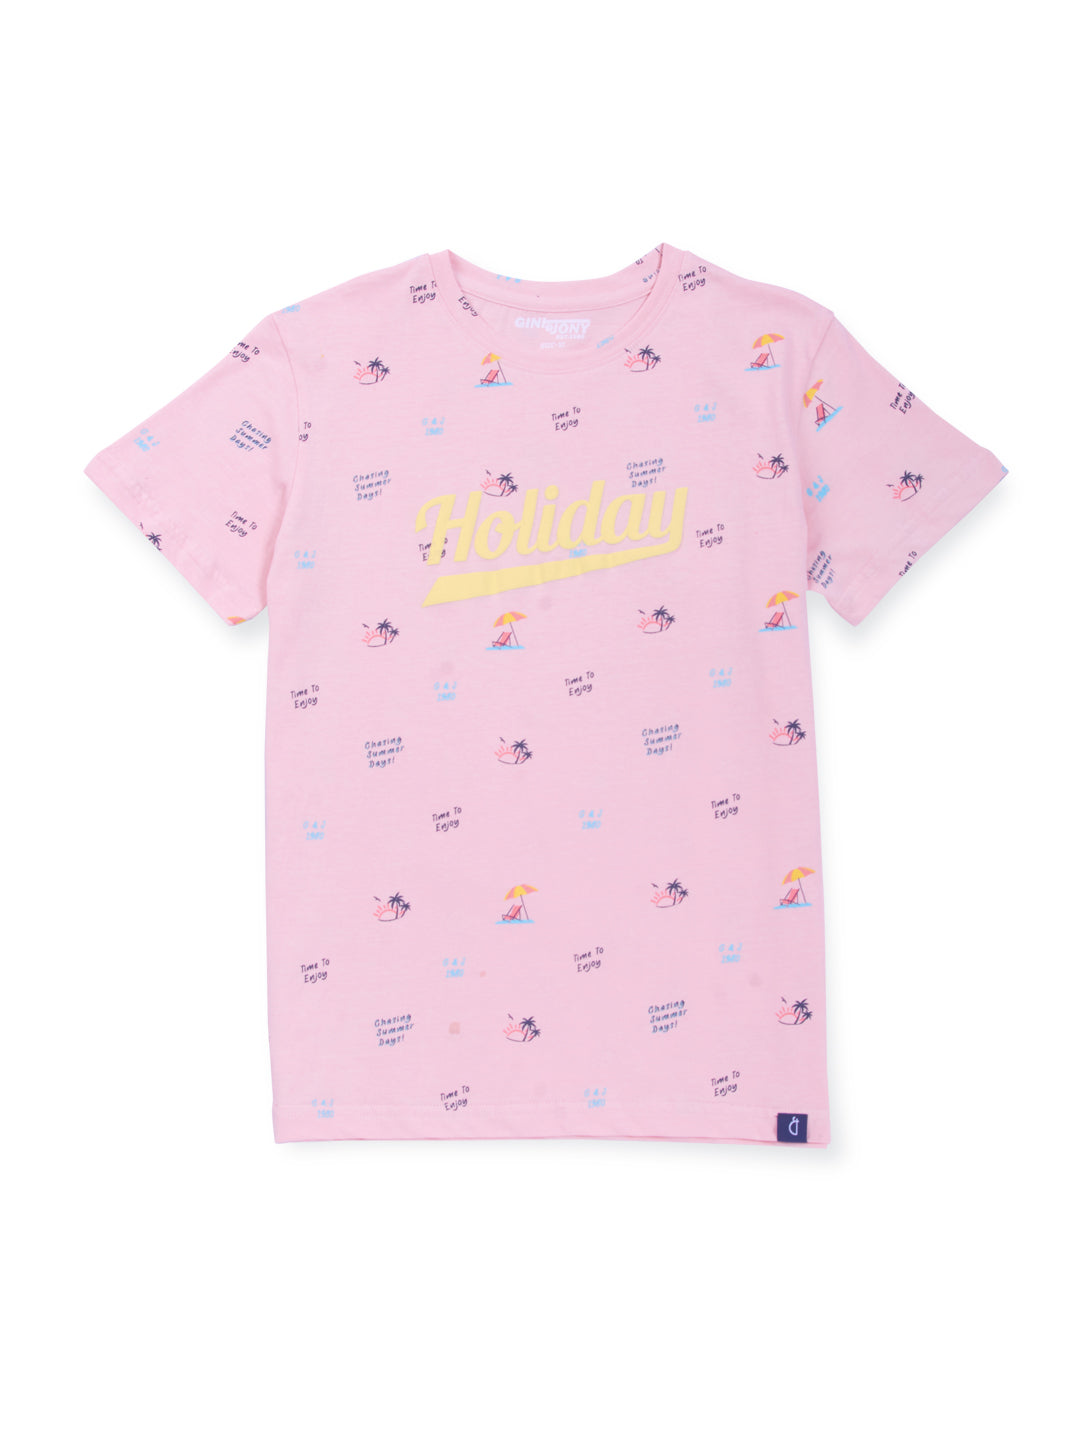 Boys Peach Cotton Printed T-Shirt